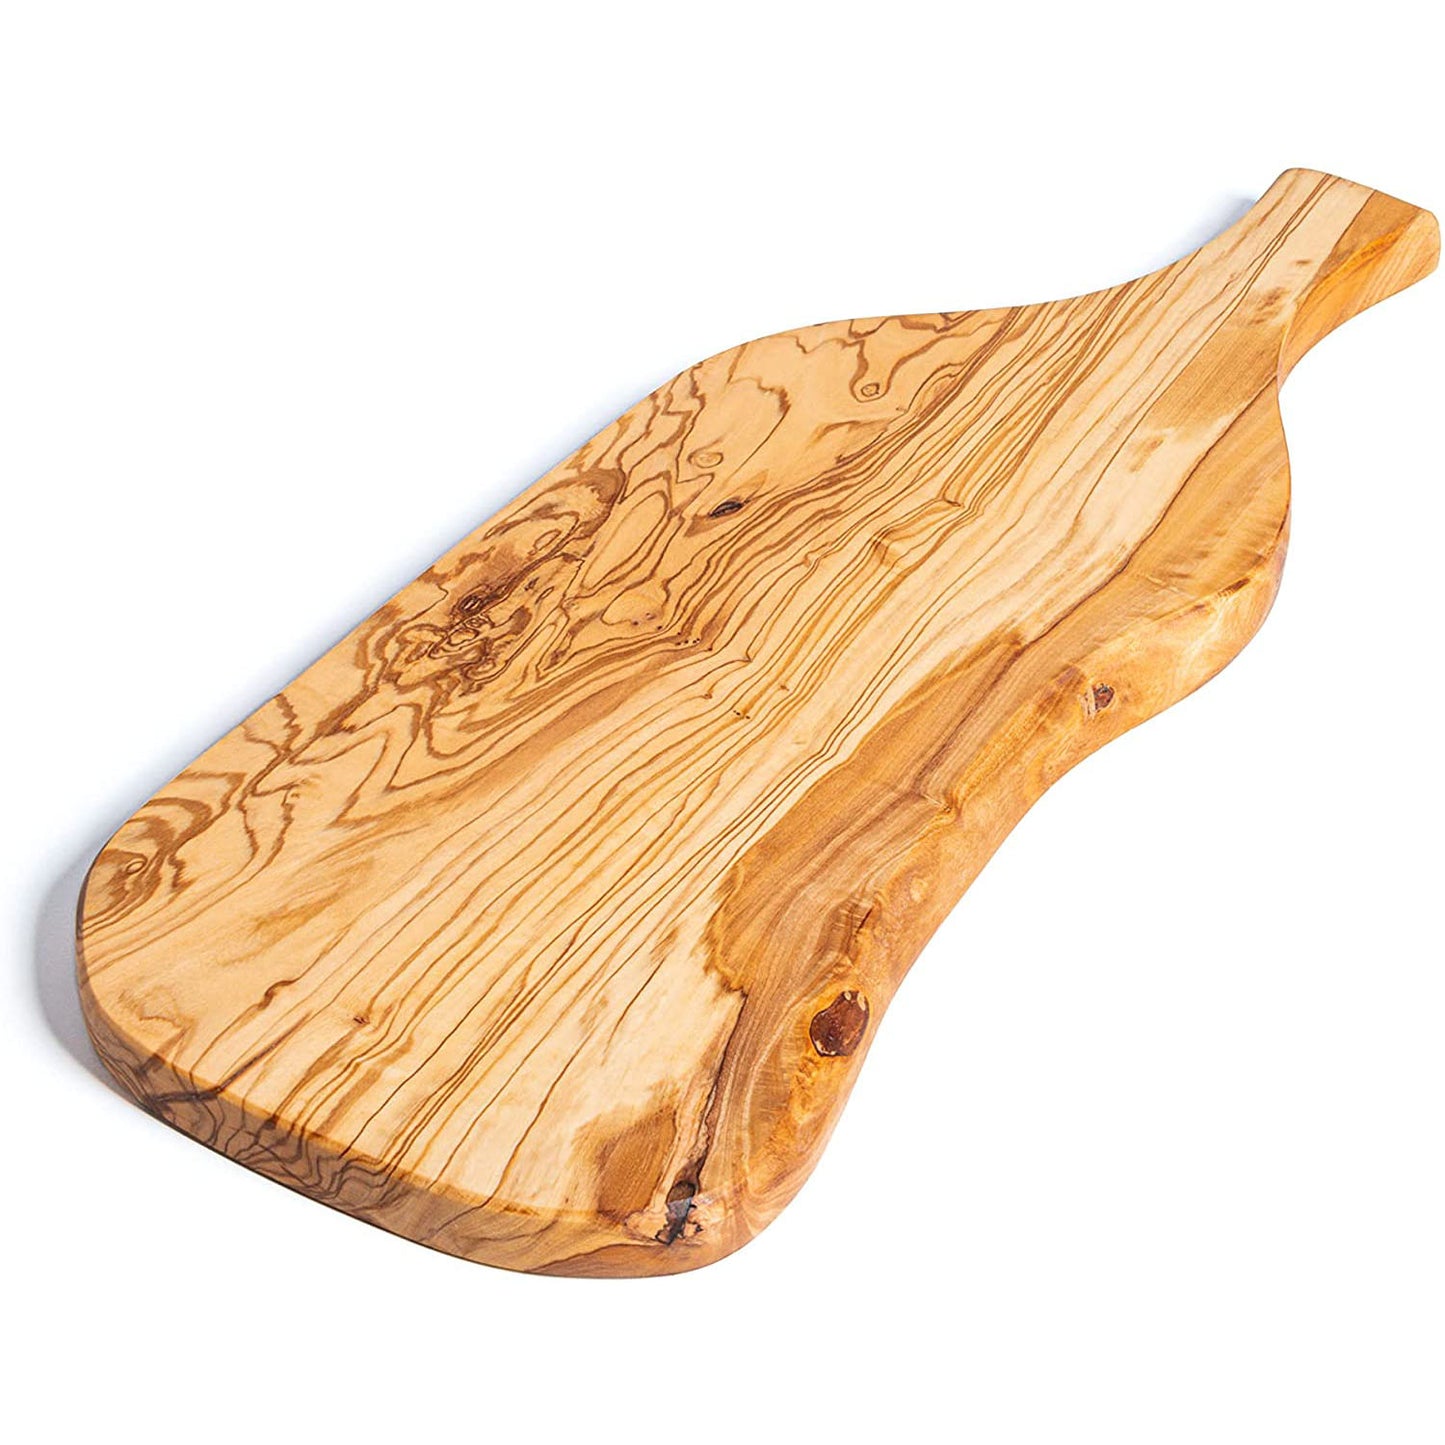 Aperitif serving board in olive wood